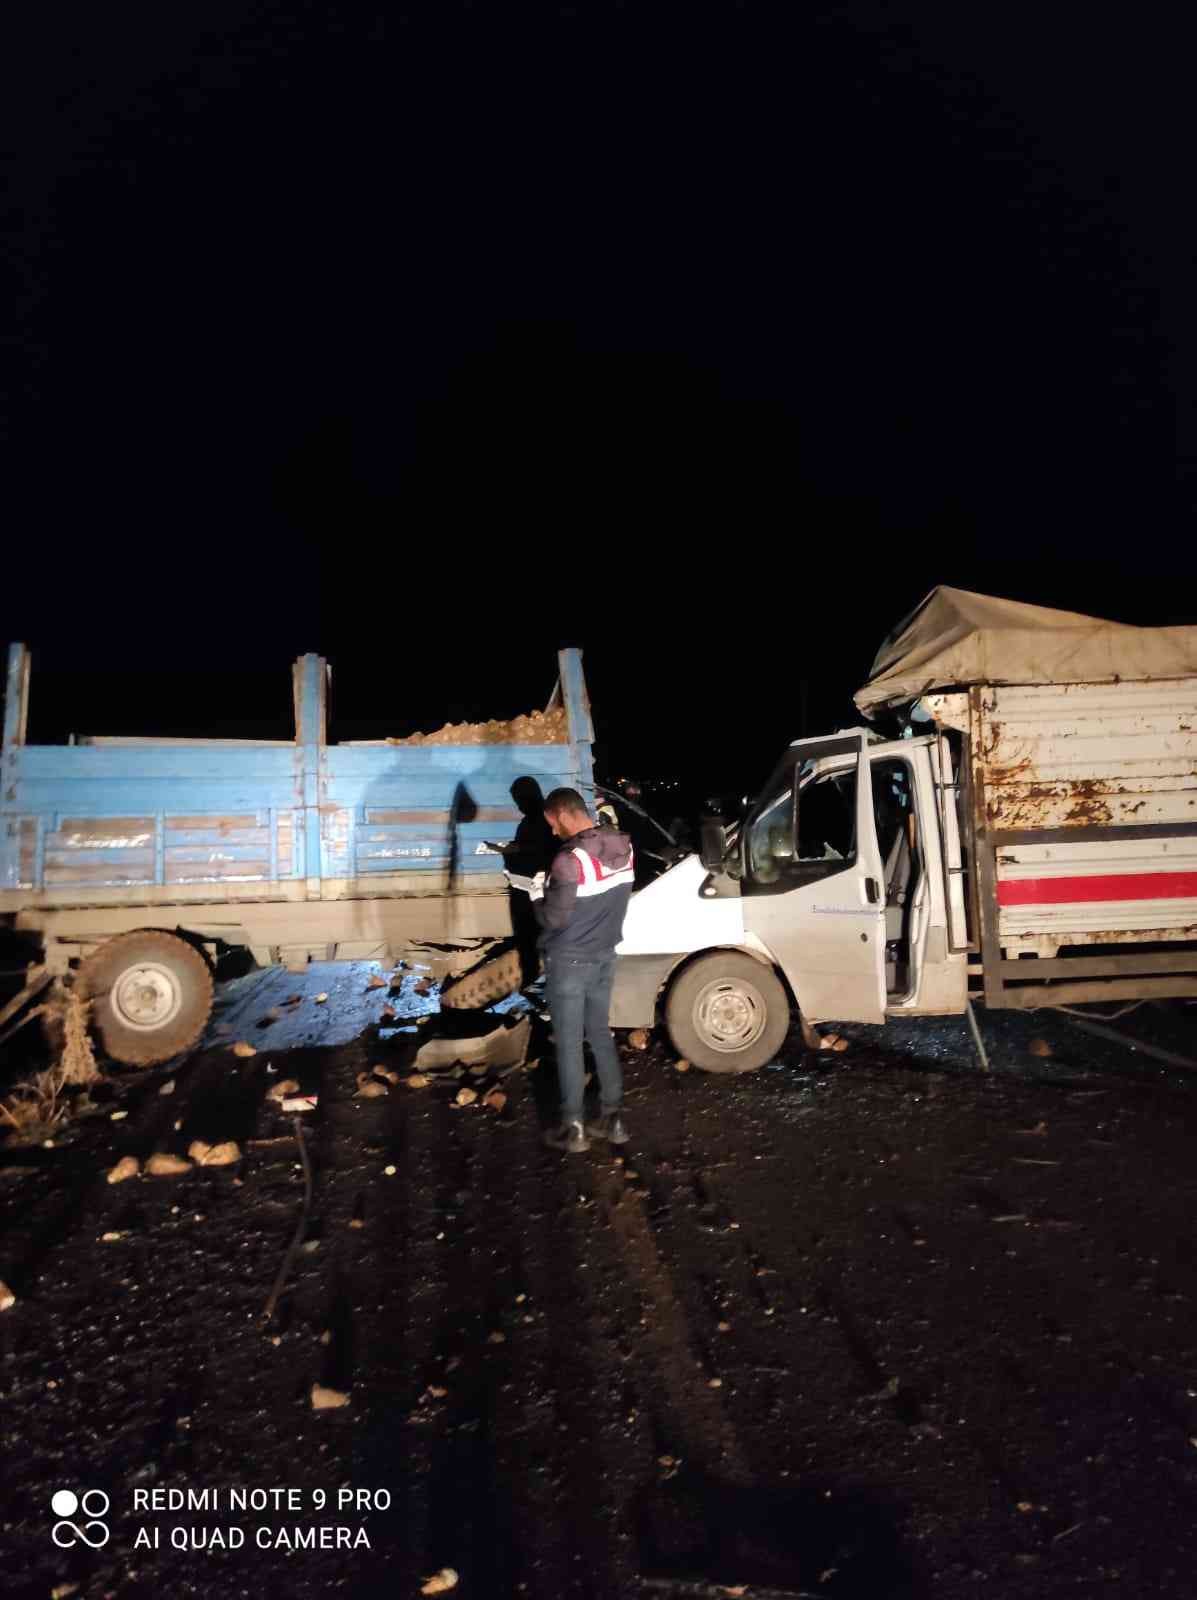 Ağrı’da kamyonet şeker pancarı yüklü traktöre çarptı: 5 yaralı #agri